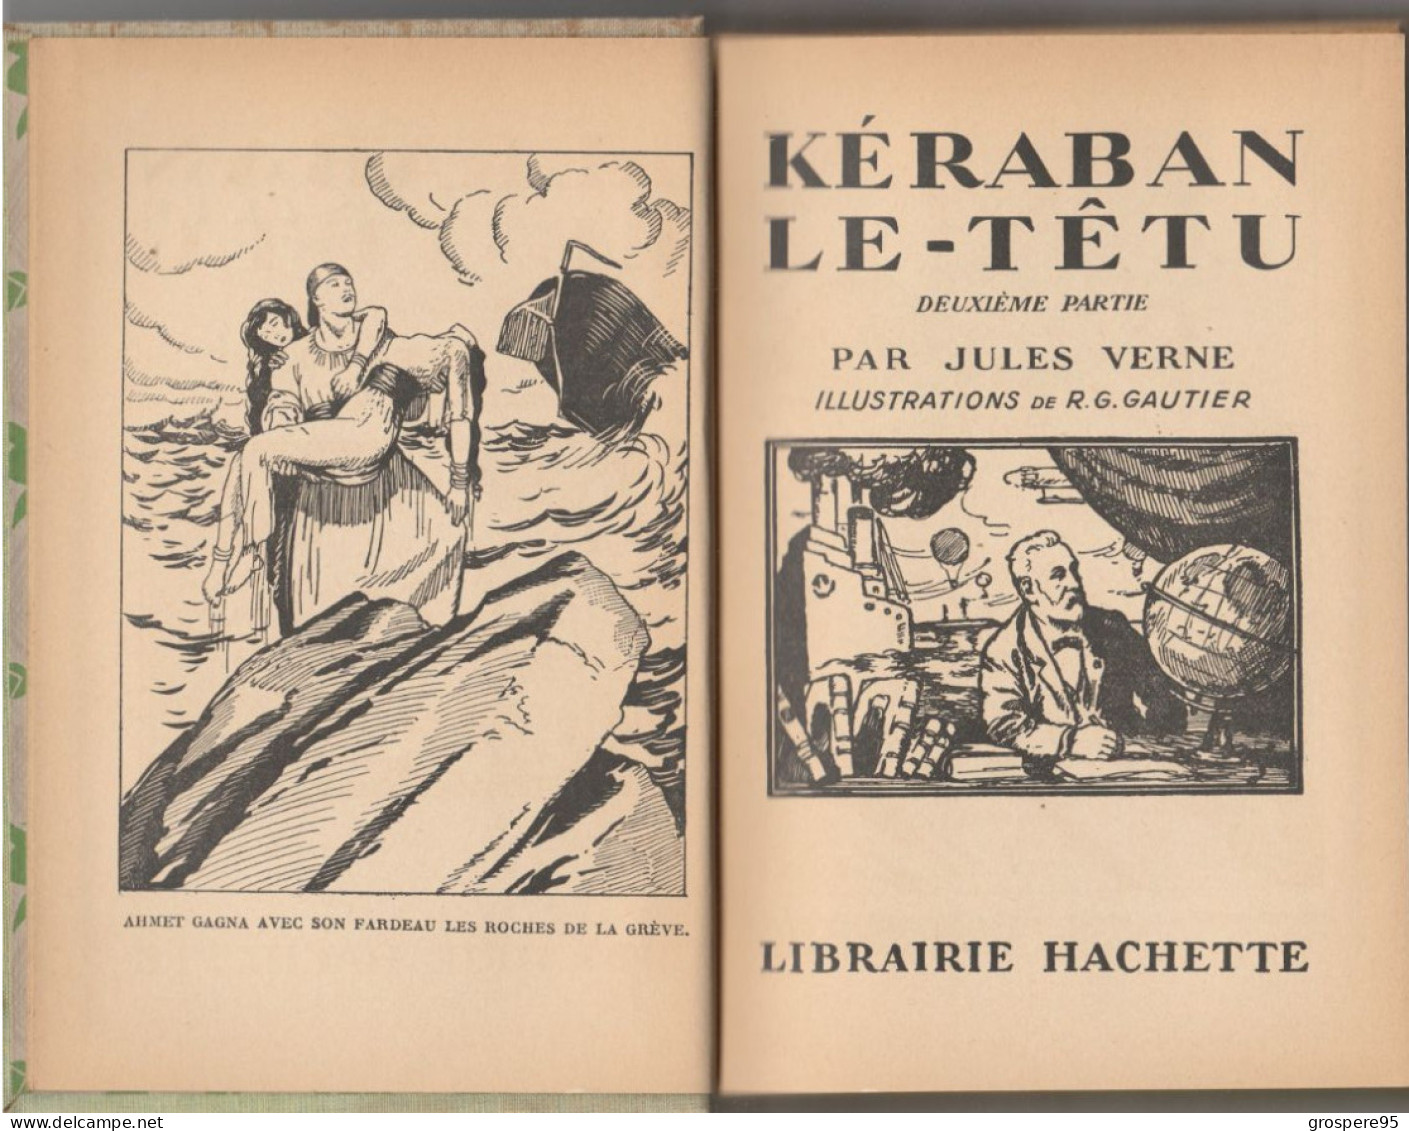 JULES VERNE KERABAN LE TETU 1er et 2ieme partie 1934 avec jaquettes